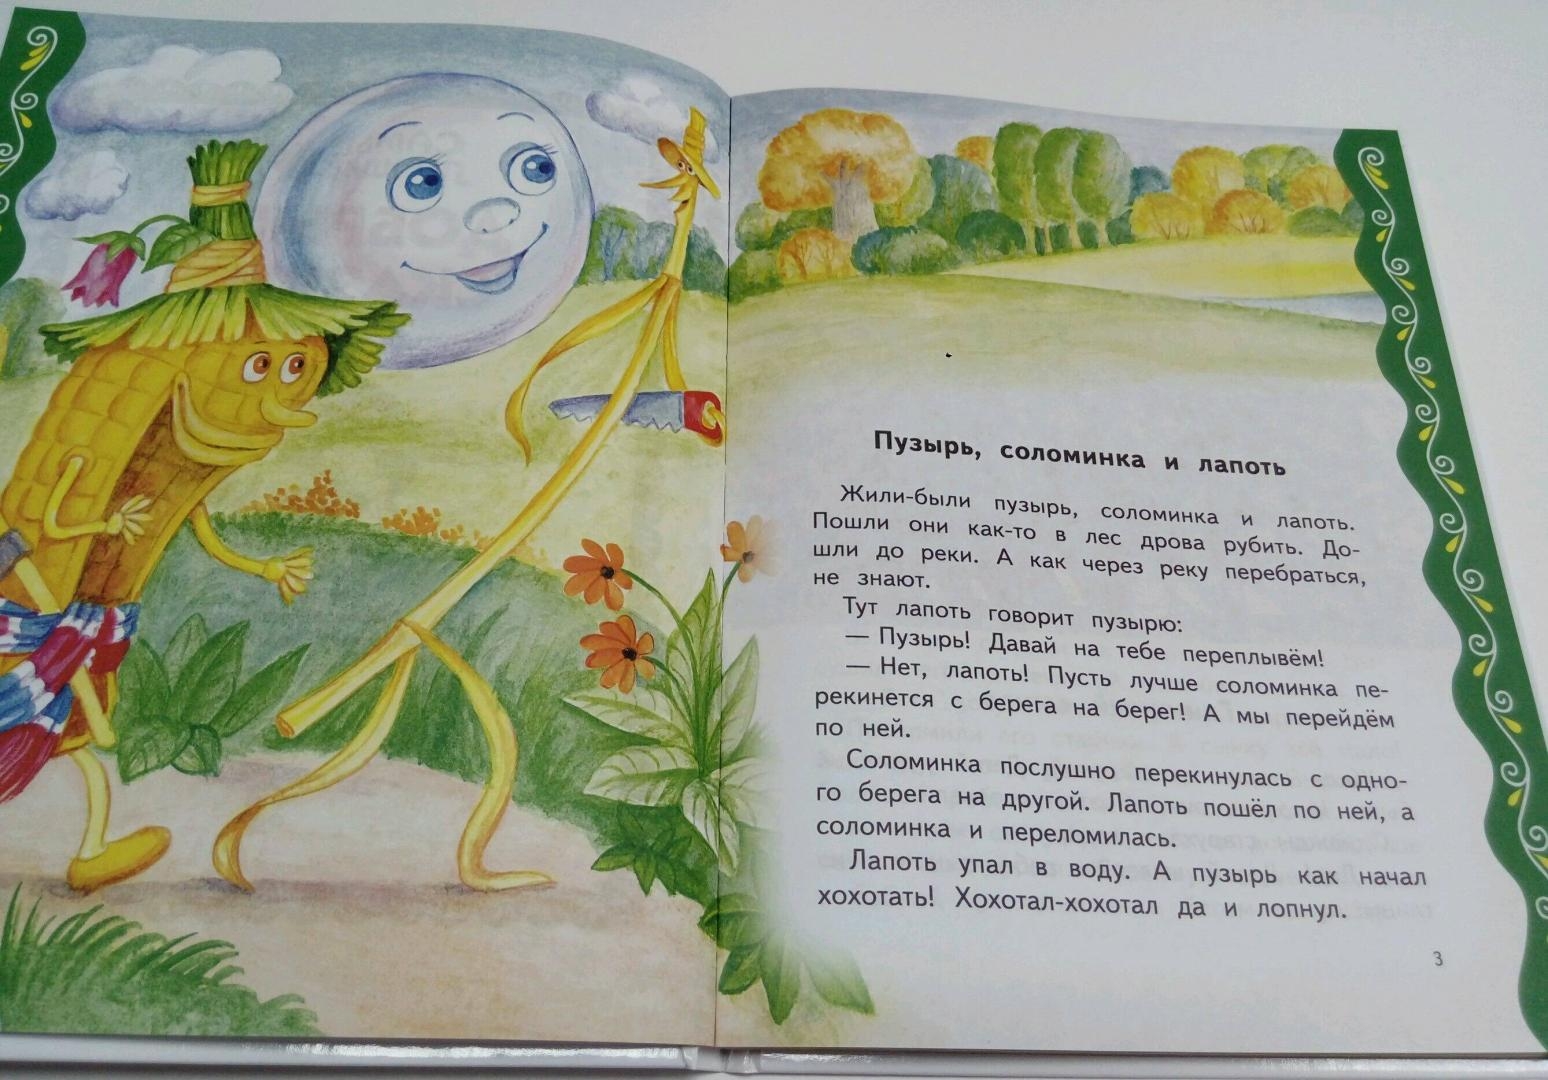 Пузырь и соломинка сказка читать. Пузырь и соломинка сказка. Пузырь, соломинка и лапоть. Пузырь соломинка и лапоть иллюстрации к сказке. Пузырь, соломинка и лапоть:русская народная сказка.